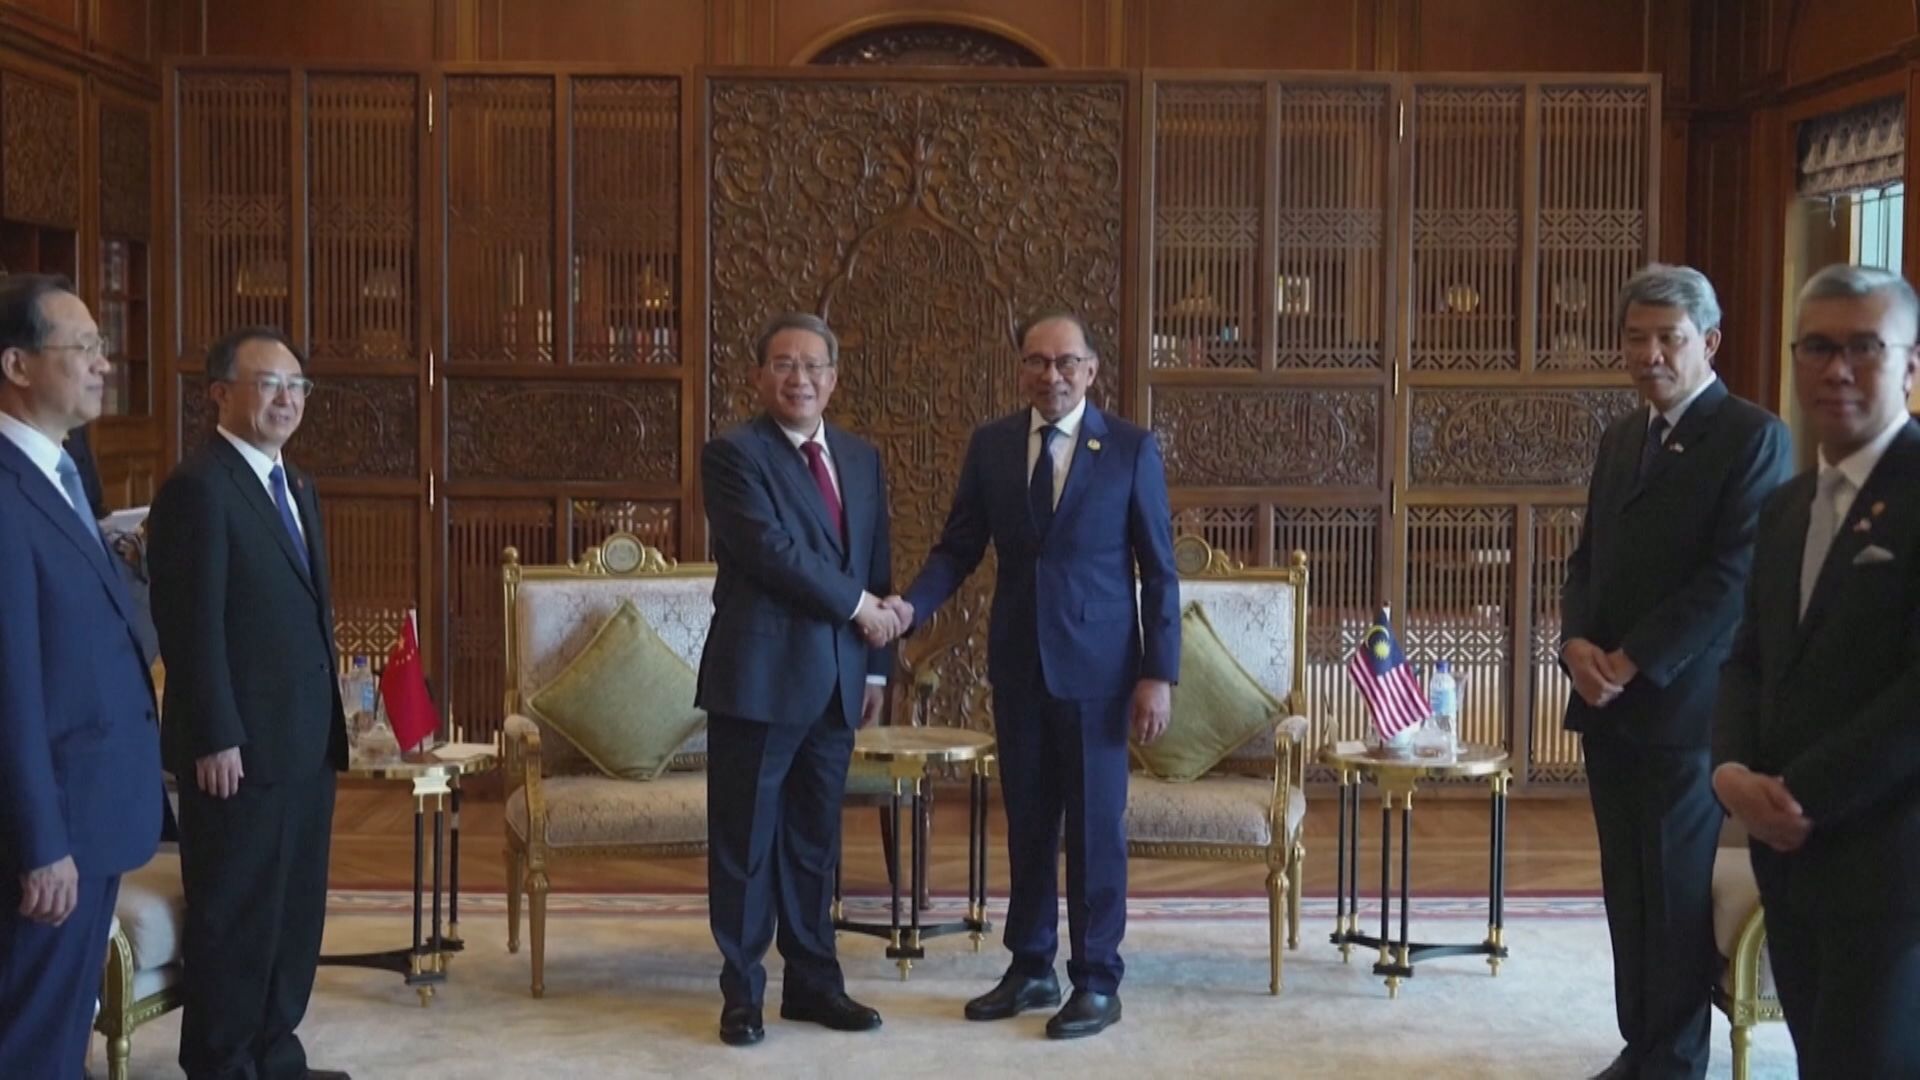 【訪馬來西亞】李強晤安華 指願深化合作及擴貿易投資